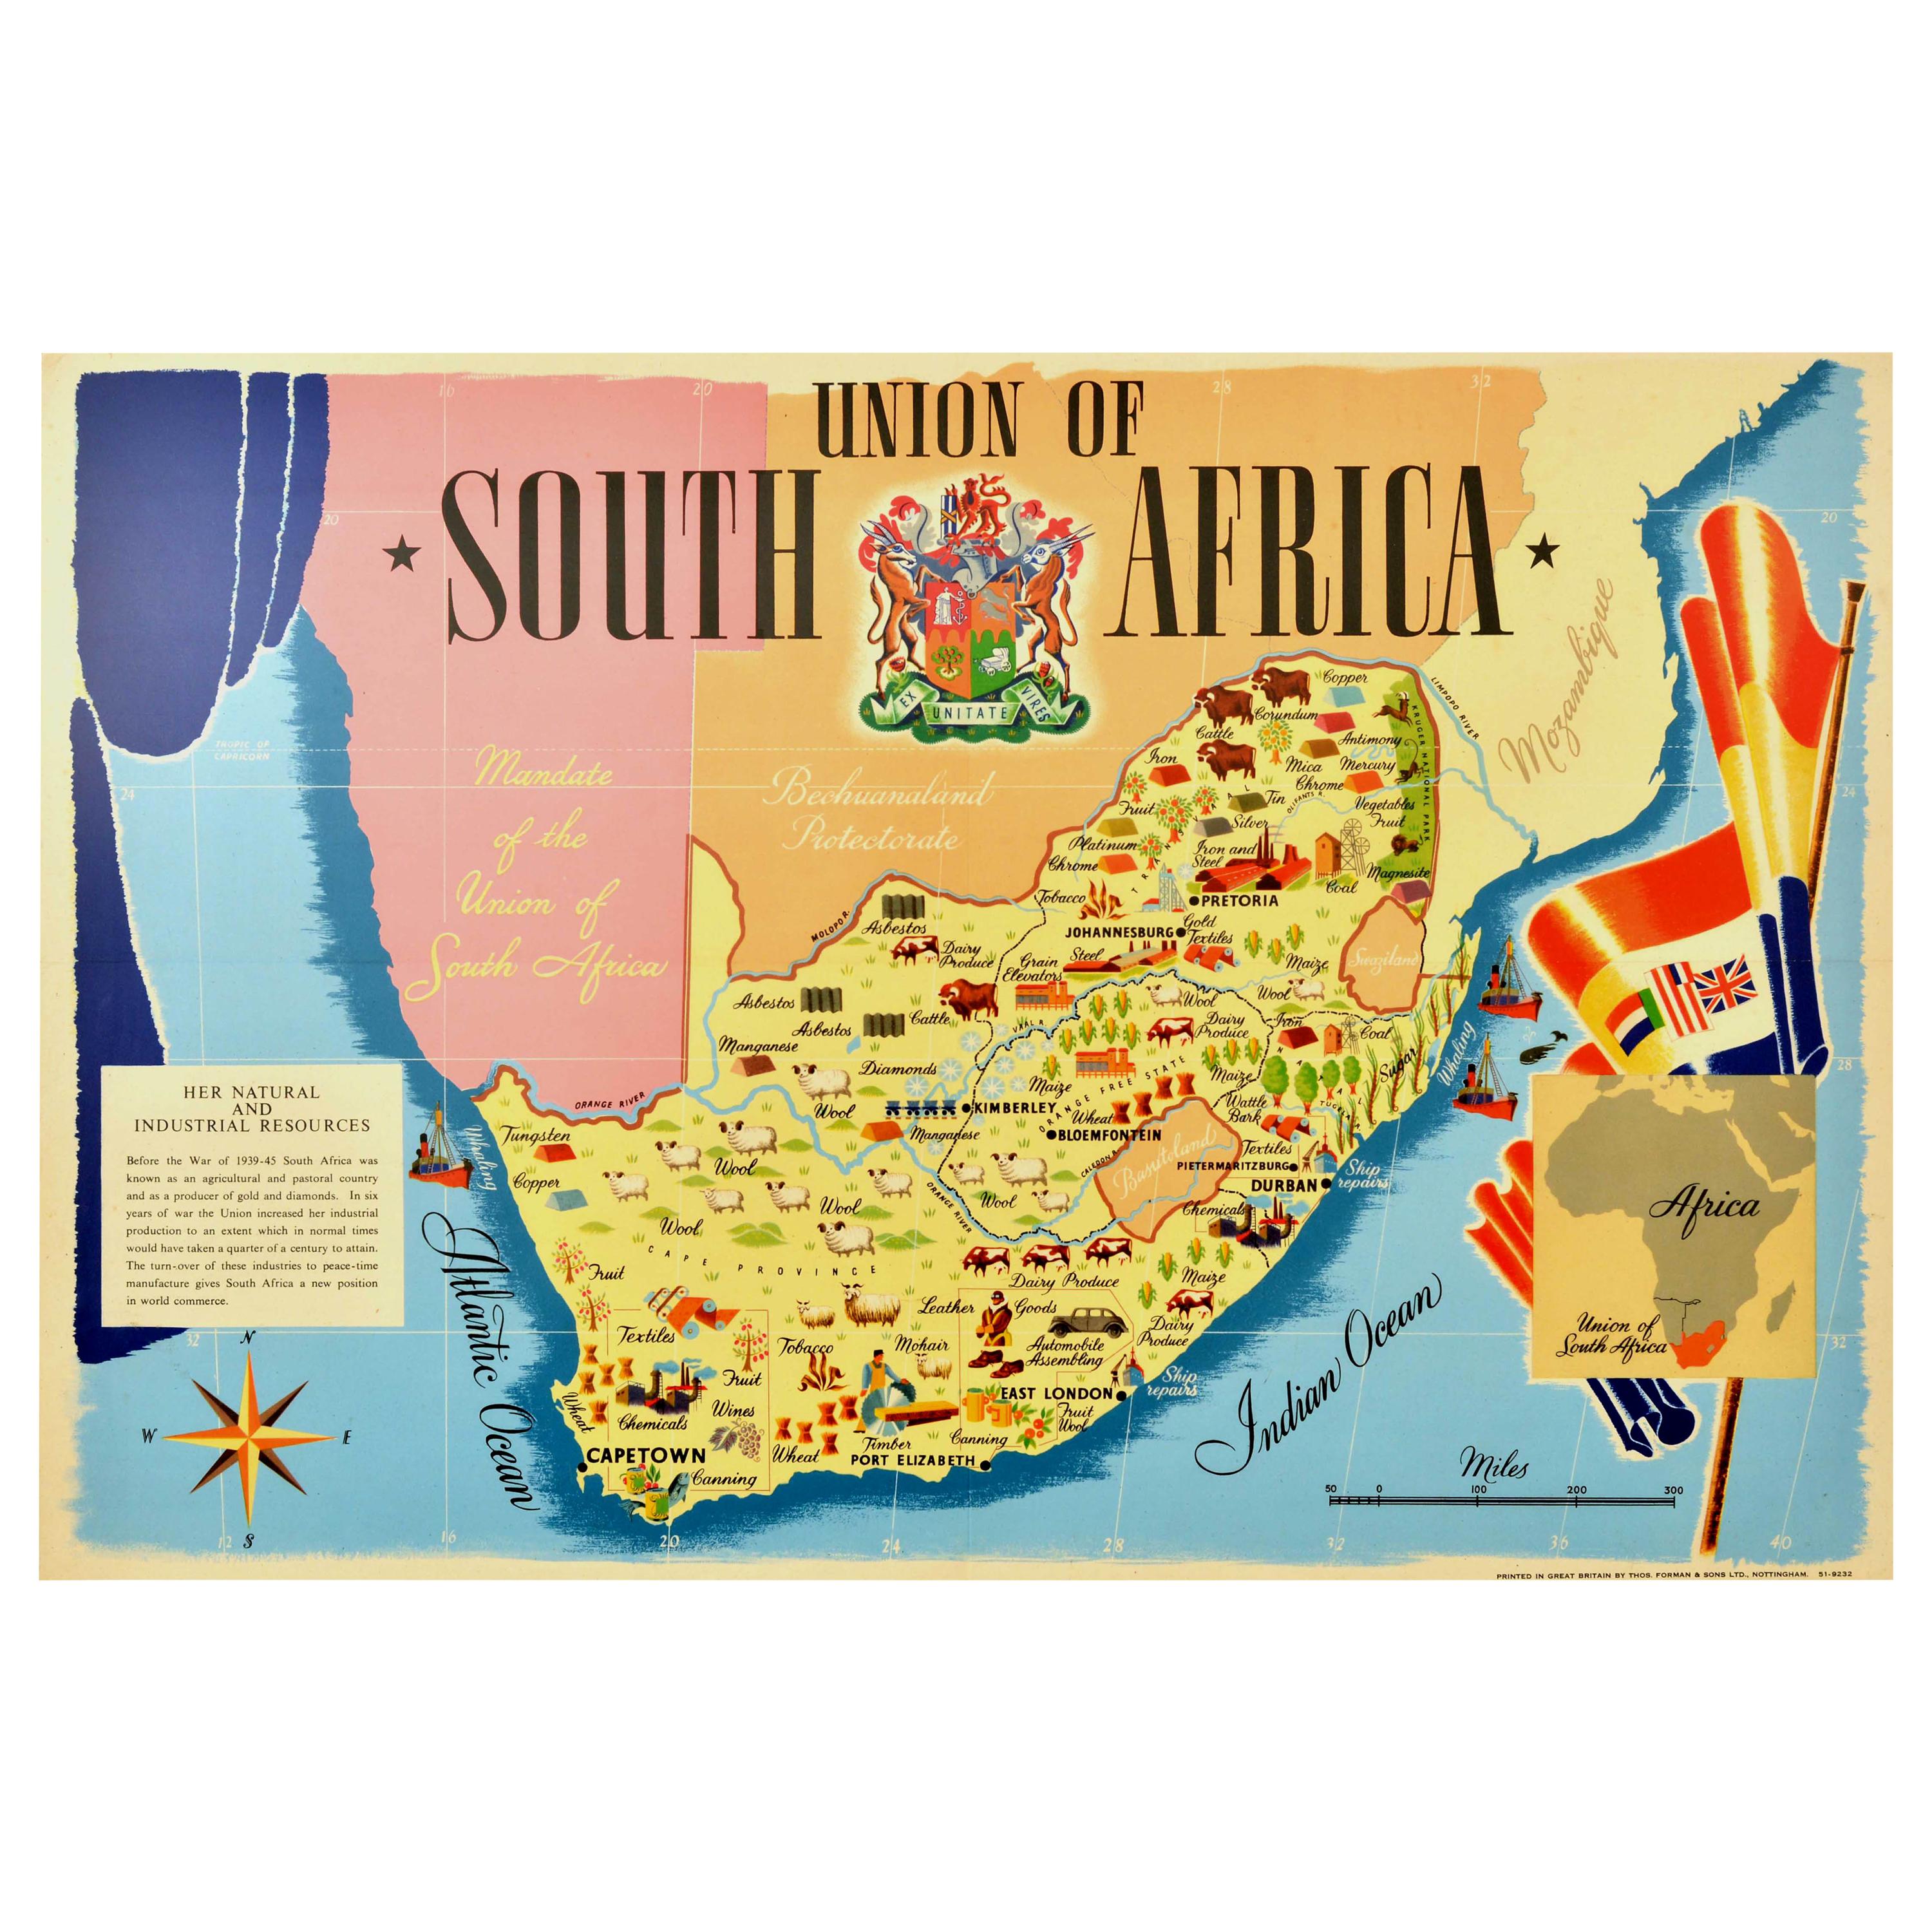 Vintage-Poster, Union of South Africa, Karte, Natur- und Industrieressourcen, Vintage